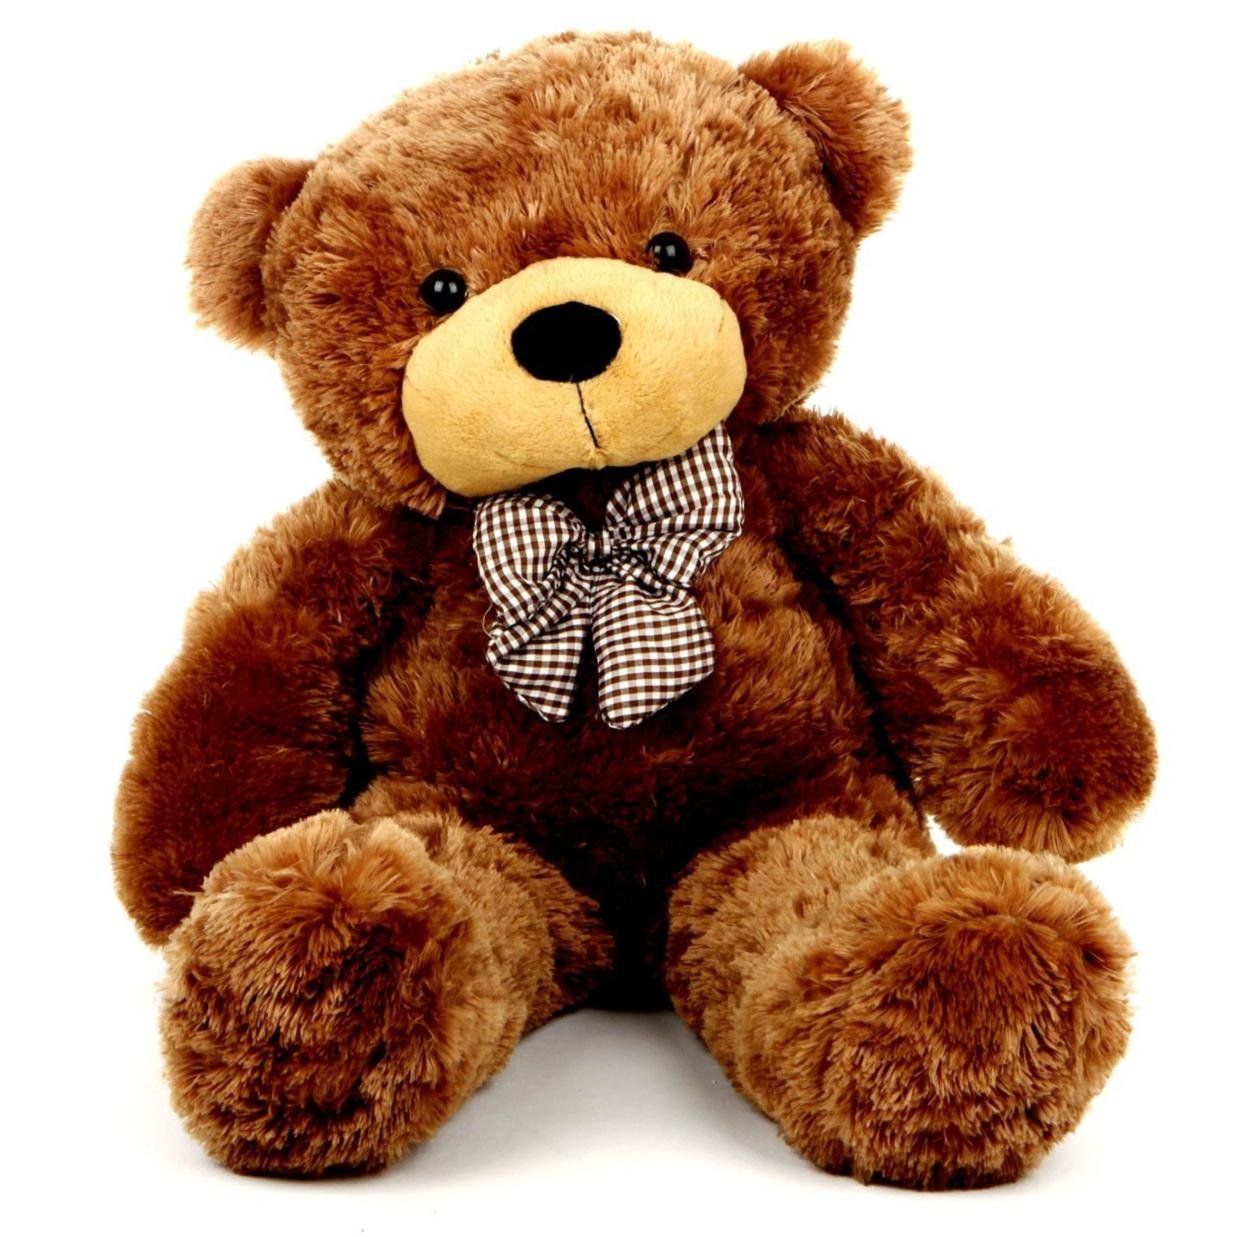 A brown teddy bear. Тедди Беар. Тедди Беар игрушка. Мишка Teddy Беар. Мишка Тедди Беар коричневый.